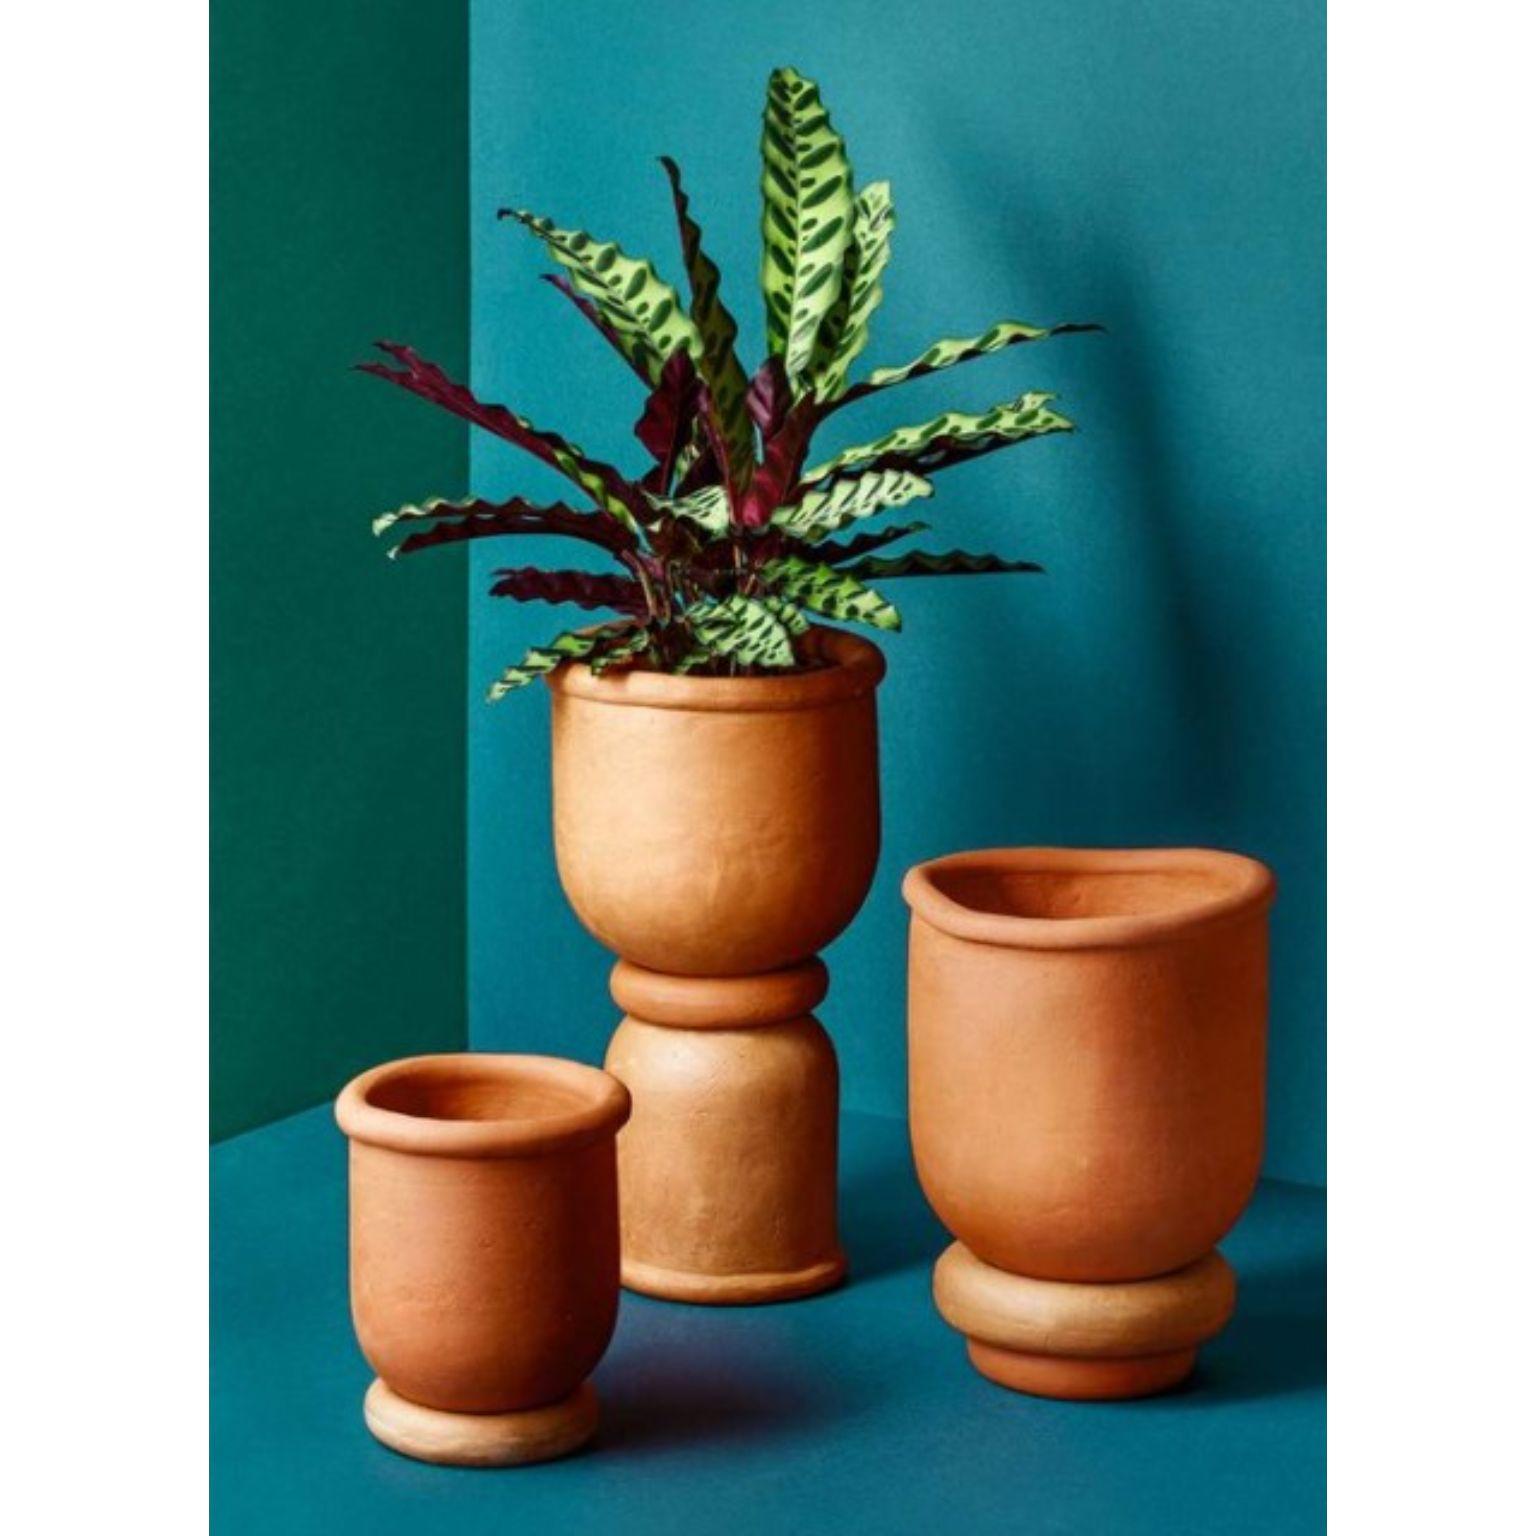 Set von 3 passenden Vasen von Tero Kuitunen
MATERIAL: Handgefertigte Terrakotta.
Abmessungen: D22 x H40 cm, D25 x H25, D17 x H22
Ebenfalls erhältlich: Zwei verschiedene Größen, die auf verschiedene Weise zusammengestellt werden